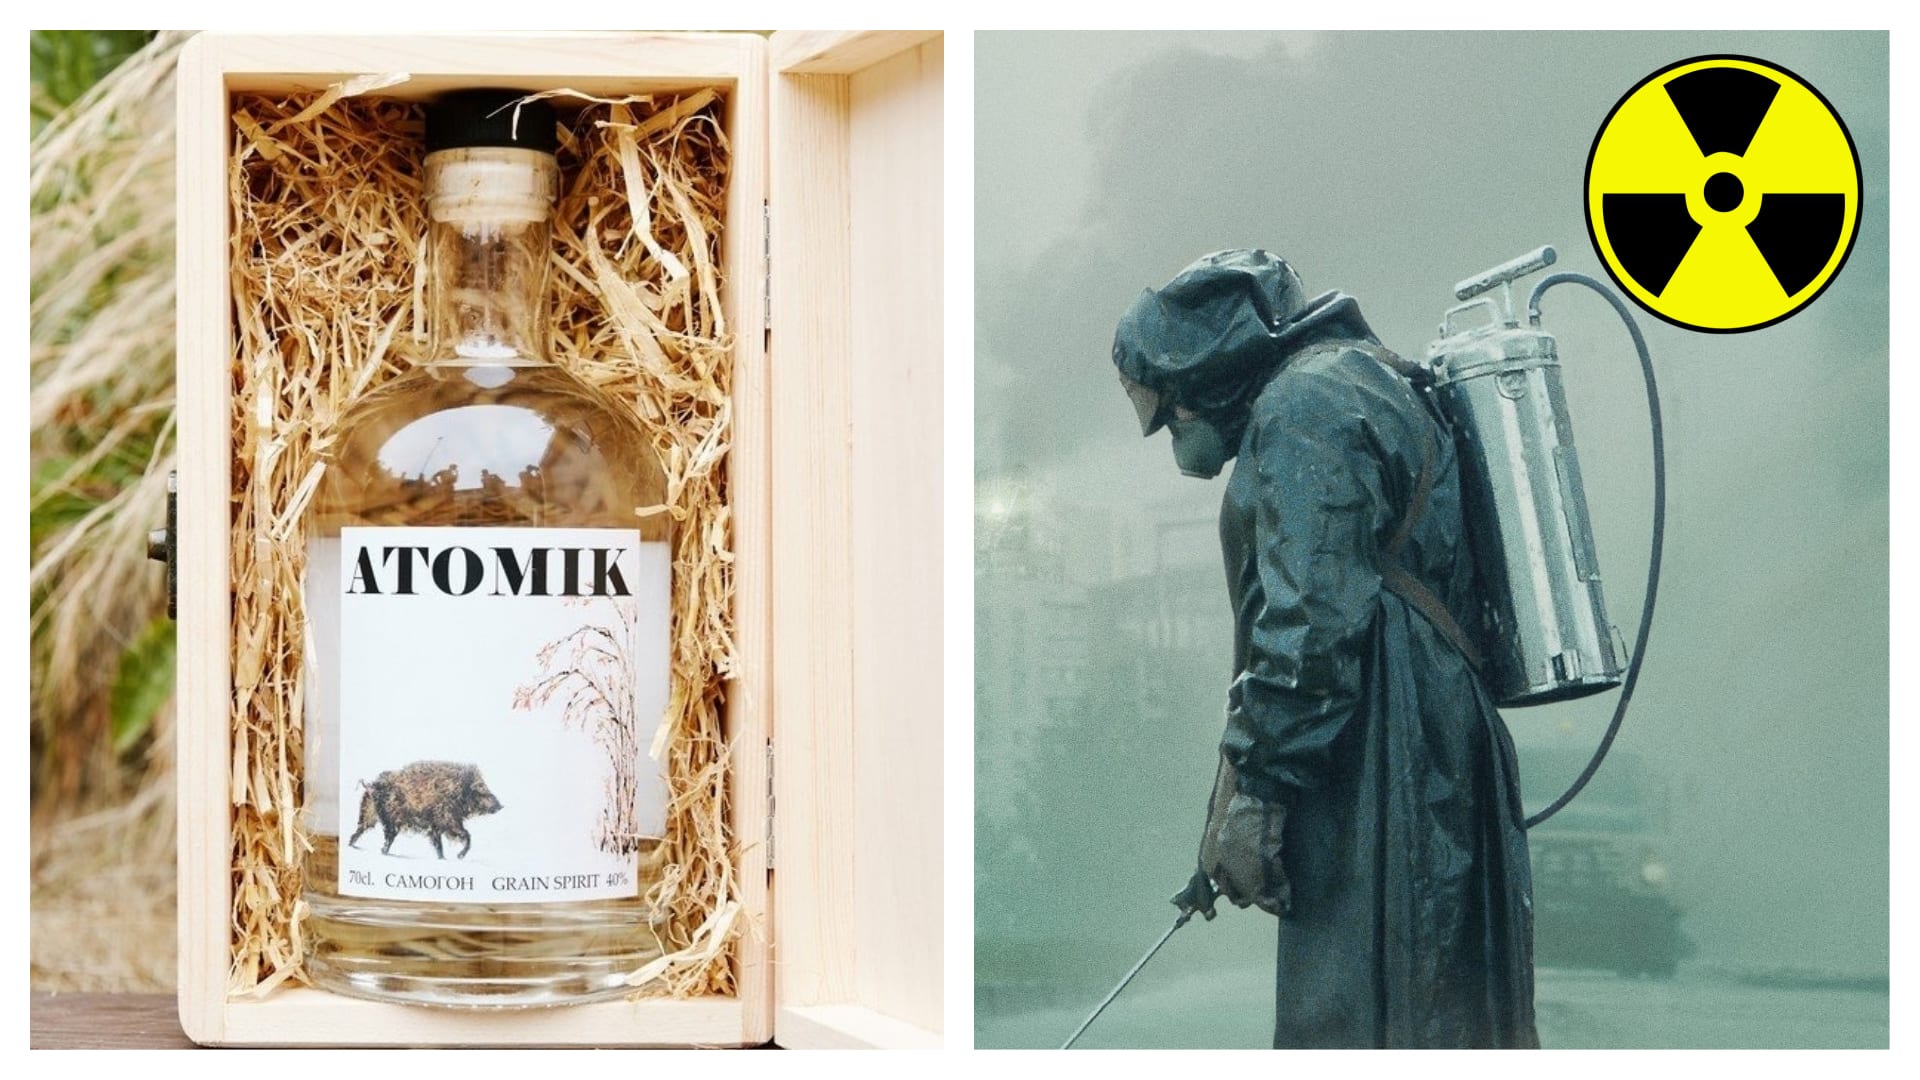 Vodka Atomic je vyrobena ze surovin z černobylské zakázané oblasti